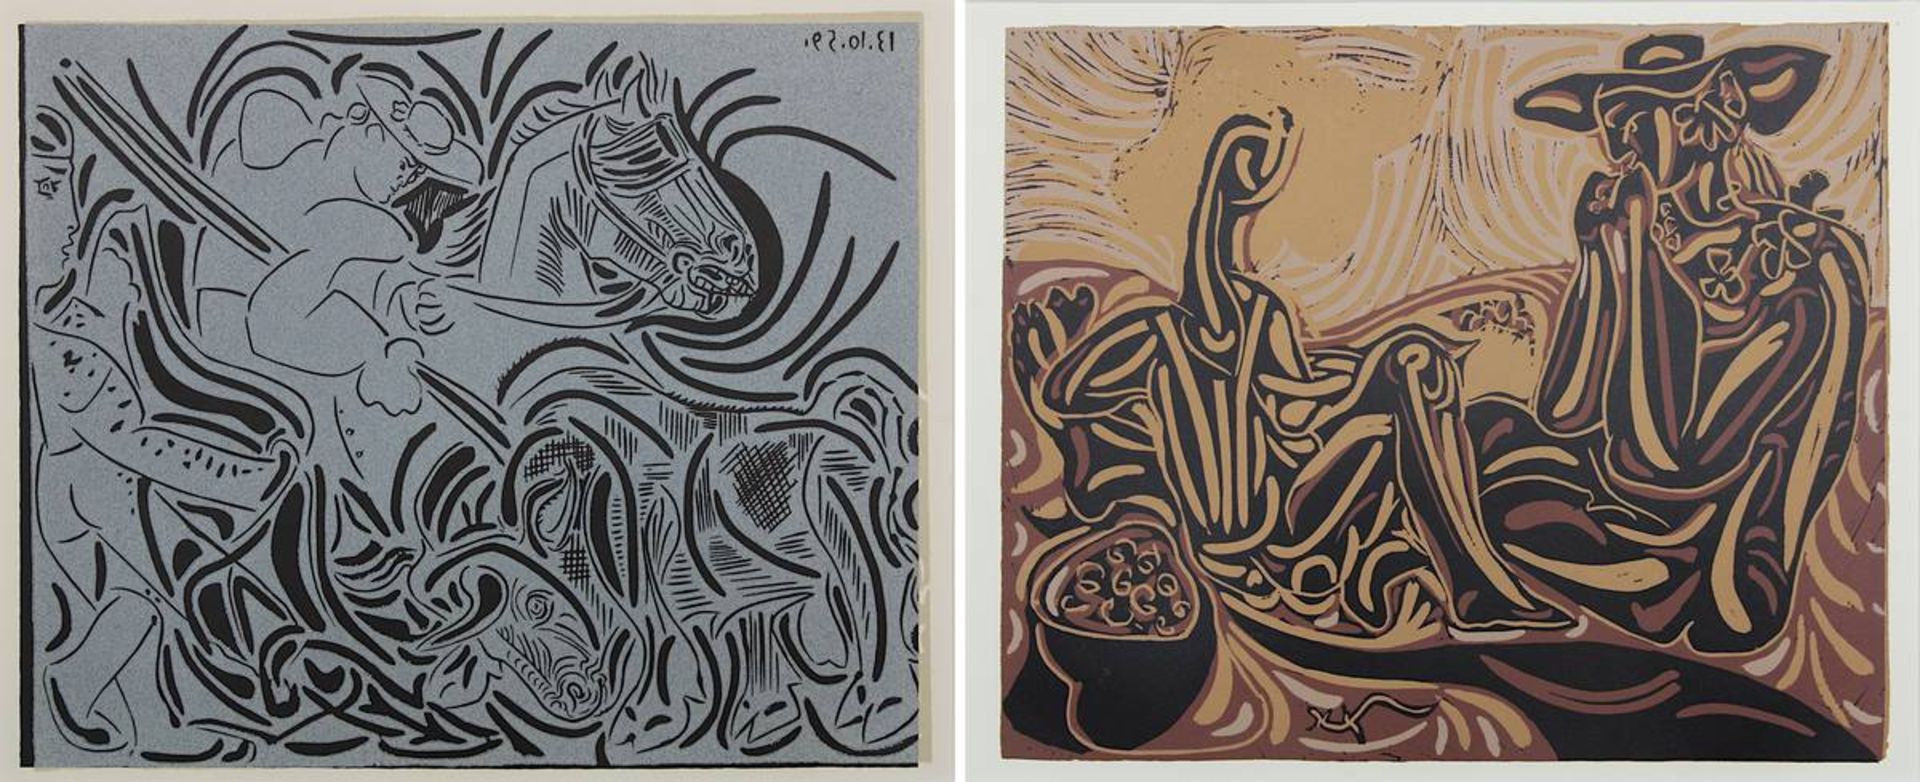 Picasso, Pablo Ruiz (Málaga 1881 - 1973 Mougins), zwei Farblinolschnitte, heiliger Georg mit dem